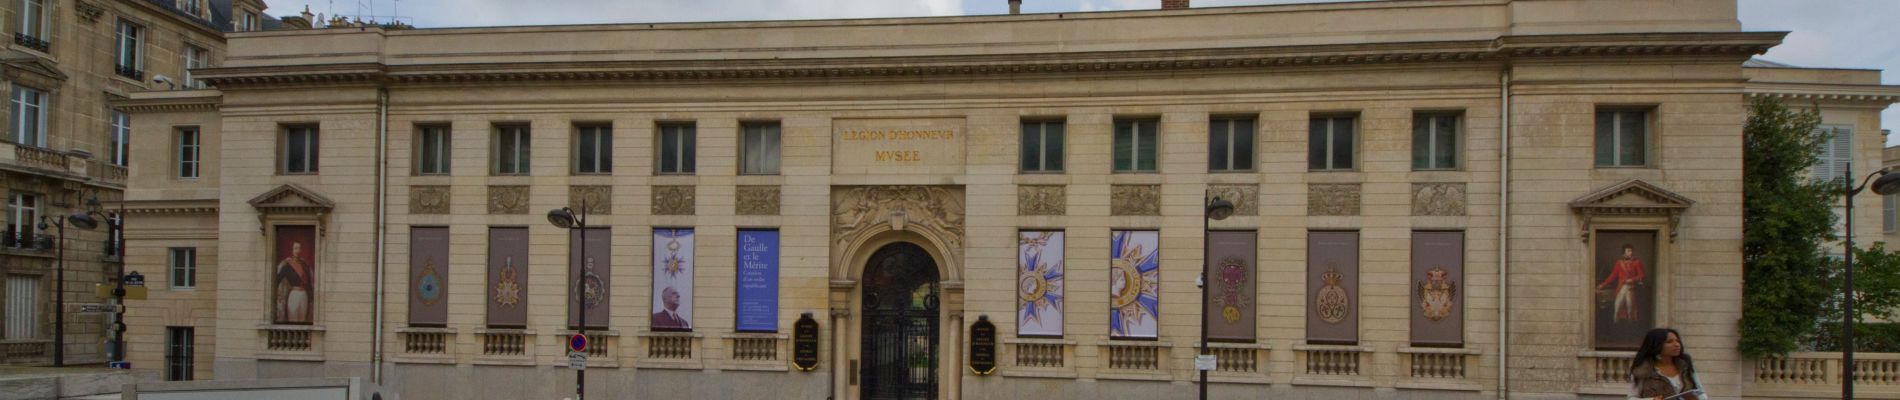 POI Paris - Musée national de la Légion d’honneur et des ordres de chevalerie - Photo